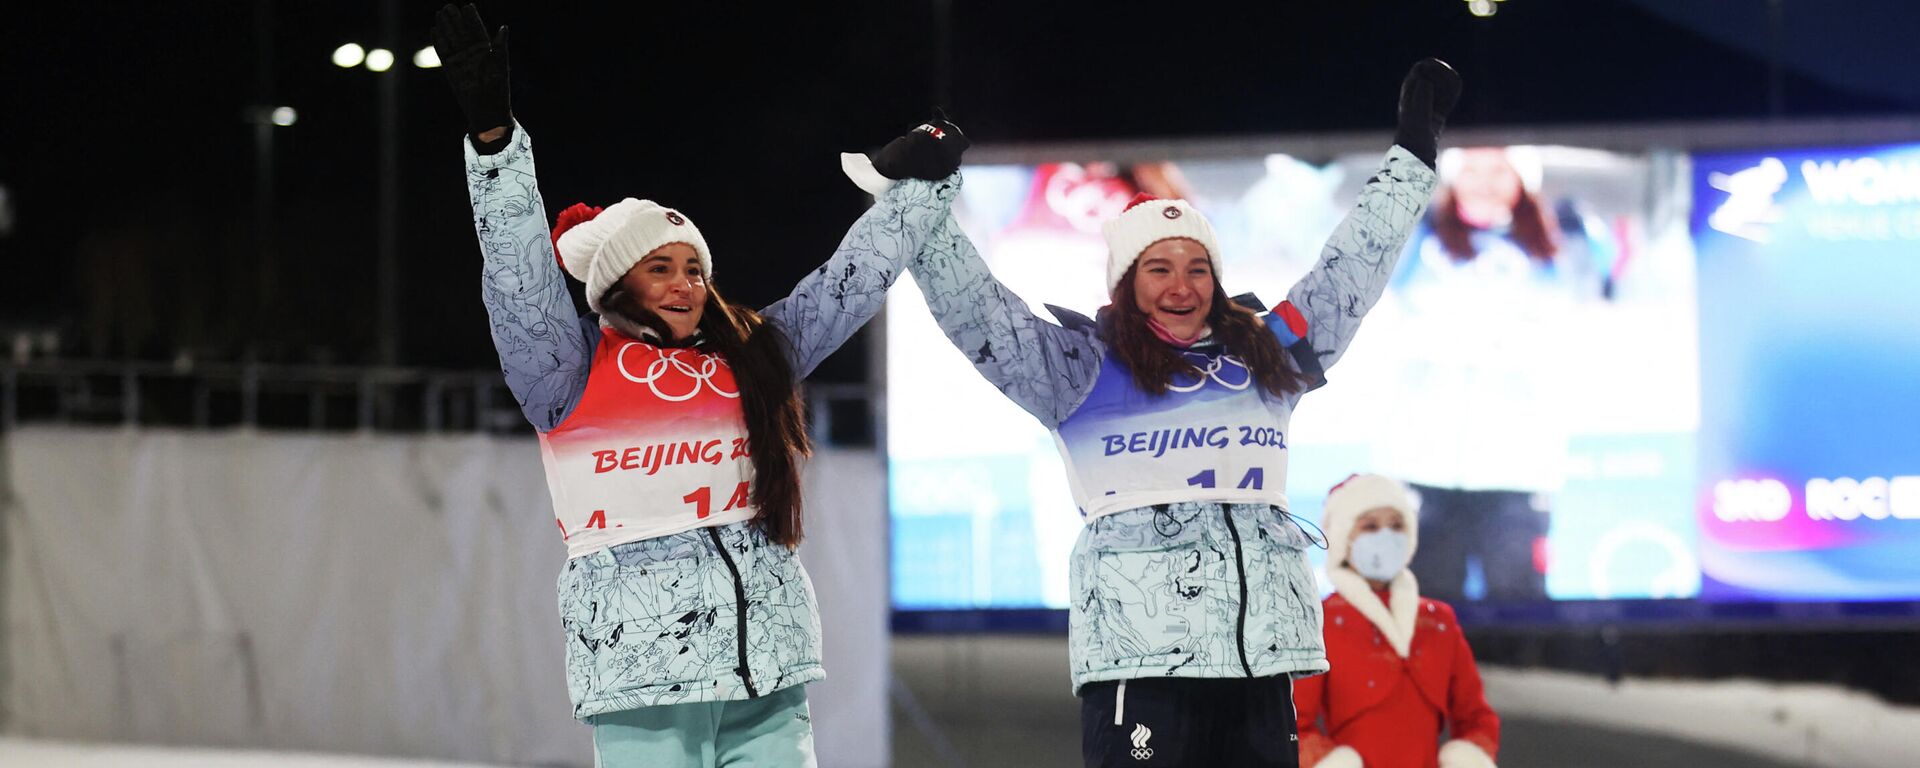 Las esquiadoras rusas Yulia Stupak y Natalia Nepryaeva ganaron las medallas de bronce en los Juegos Olímpicos de Invierno de Pekín 2022 - Sputnik Mundo, 1920, 16.02.2022